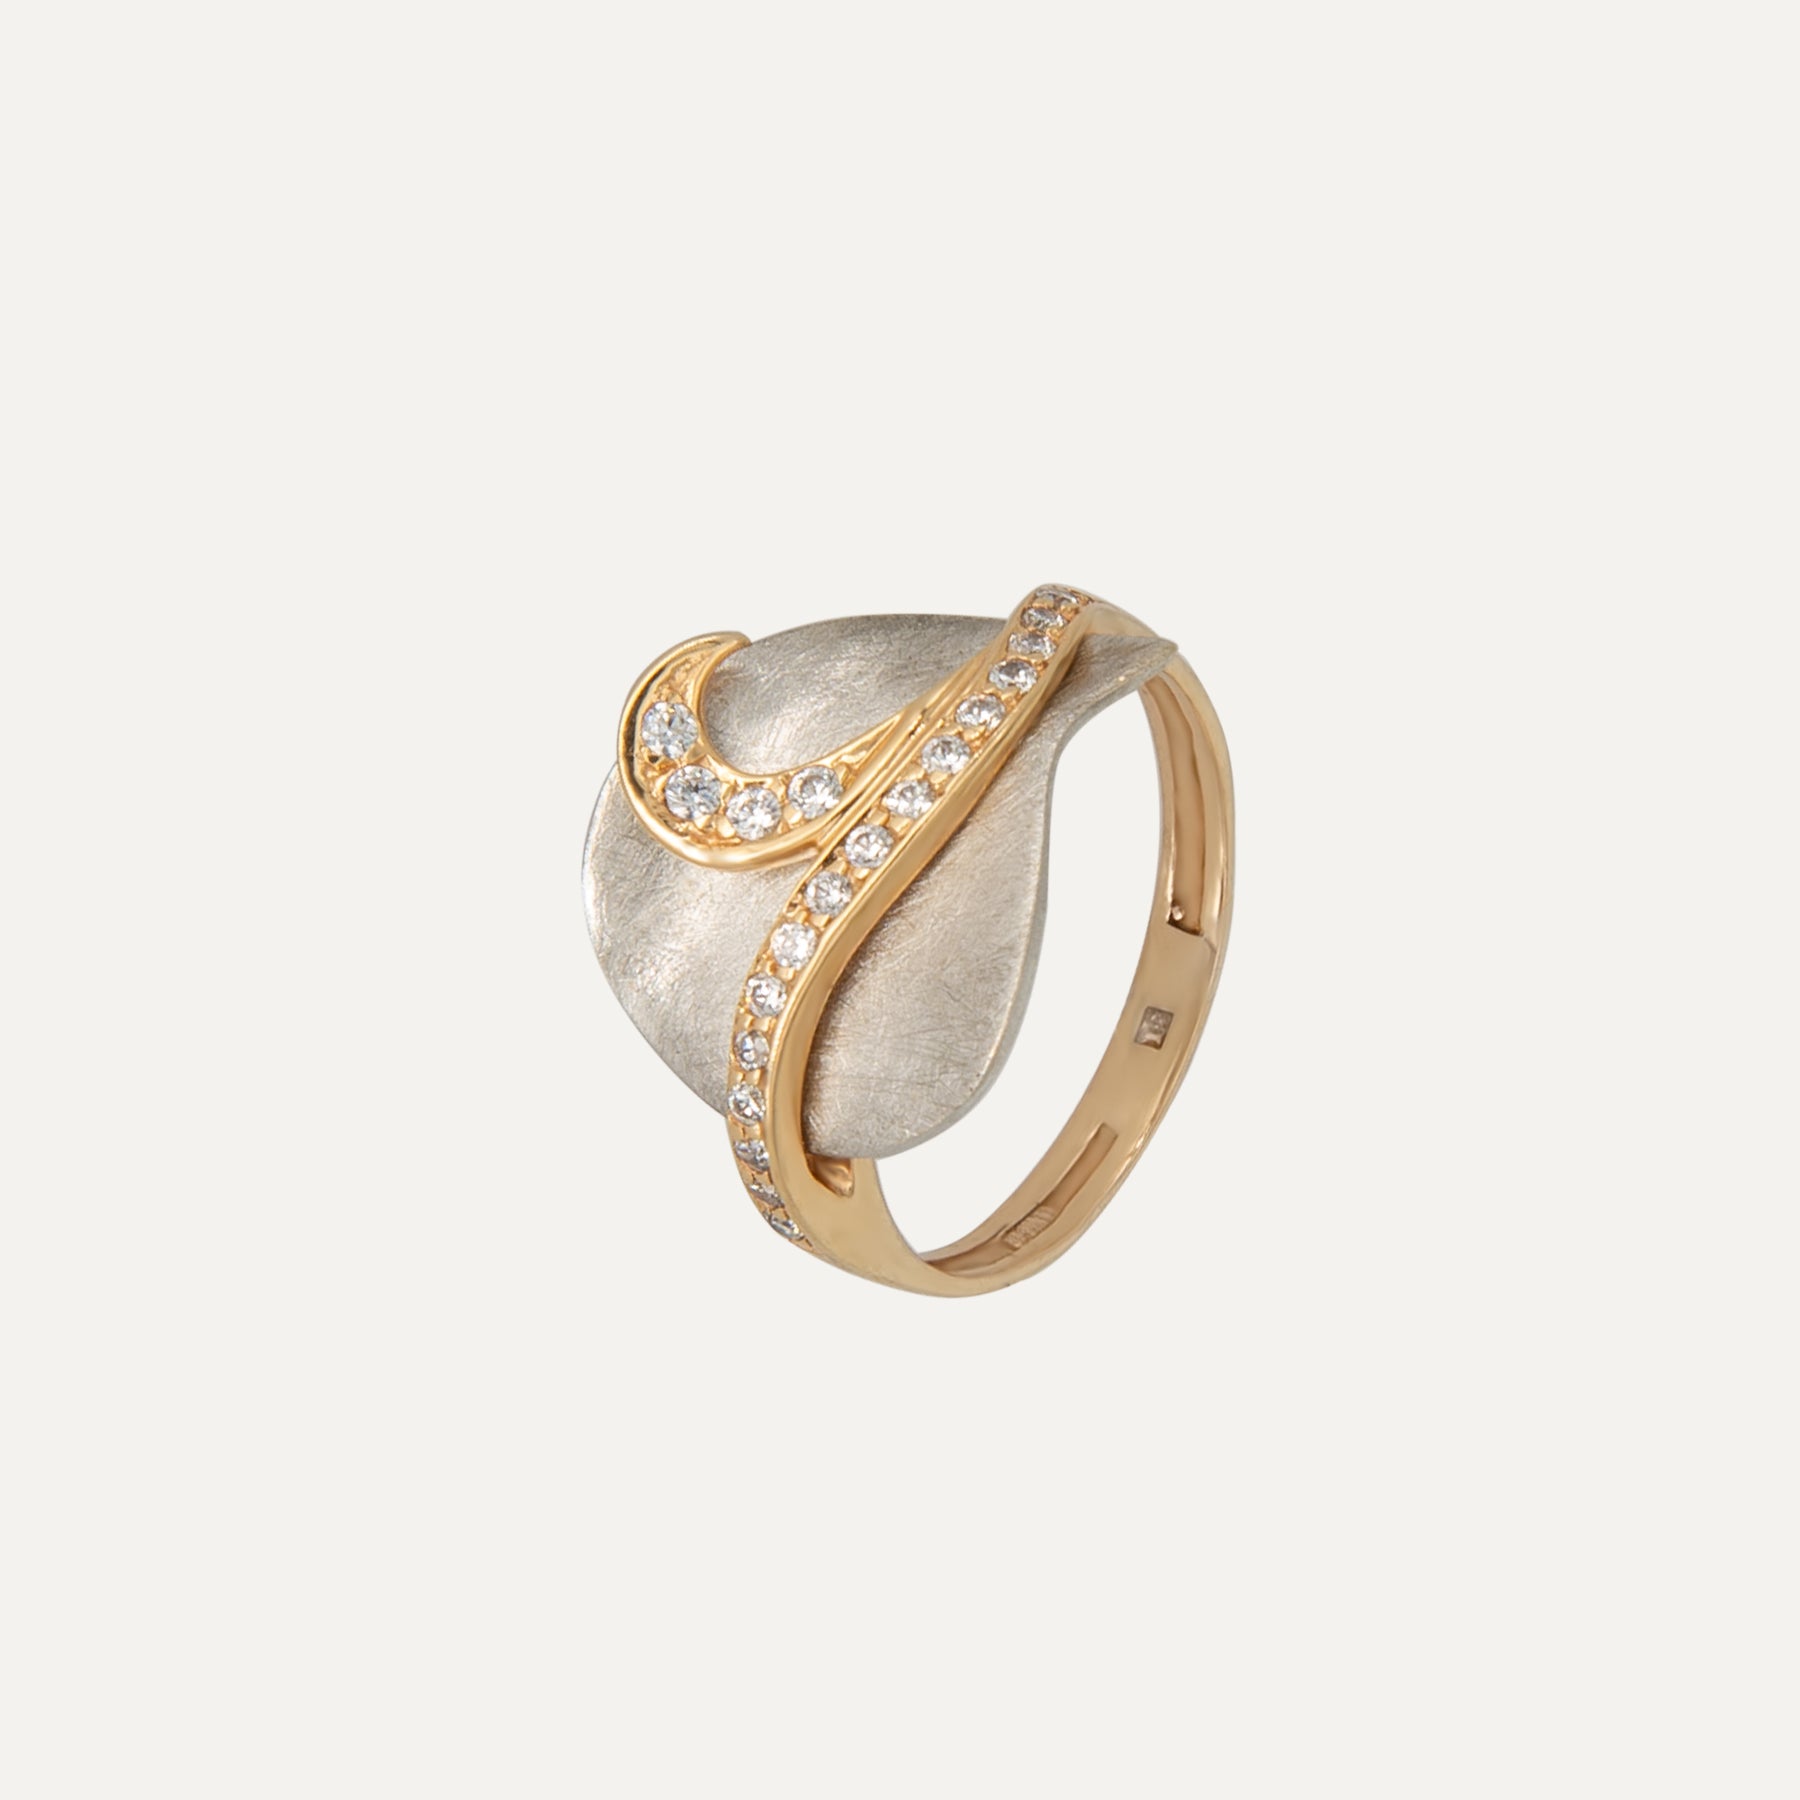 Auksinis žiedas su sendinto balto aukso detale ir cirkoniu